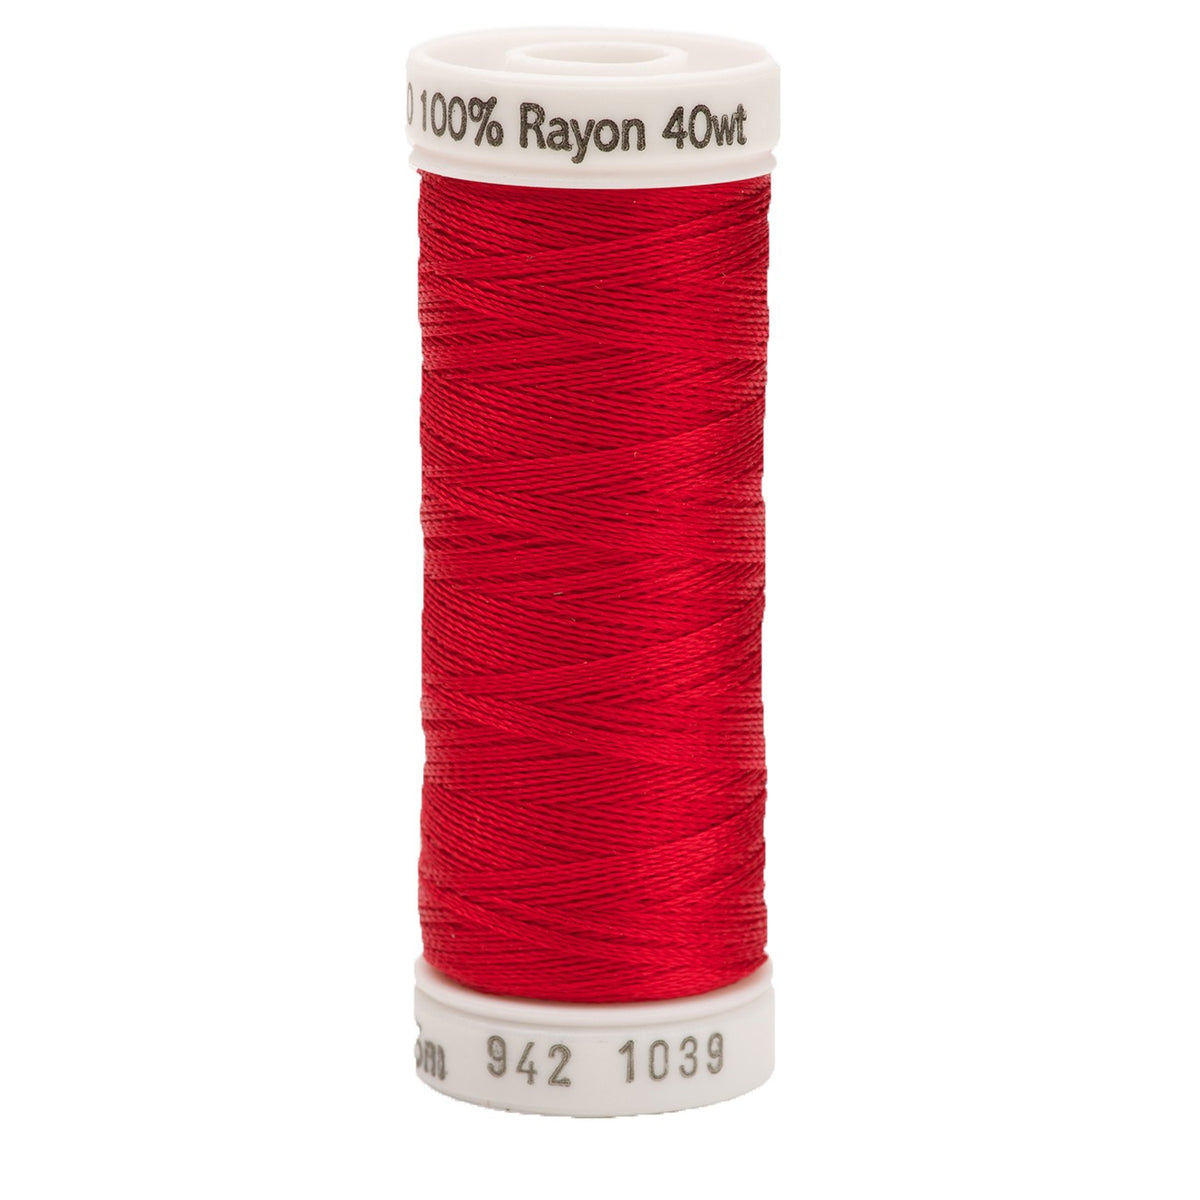 Sulky Rayon 40wt Thread 1039 True Red  250yd Spool